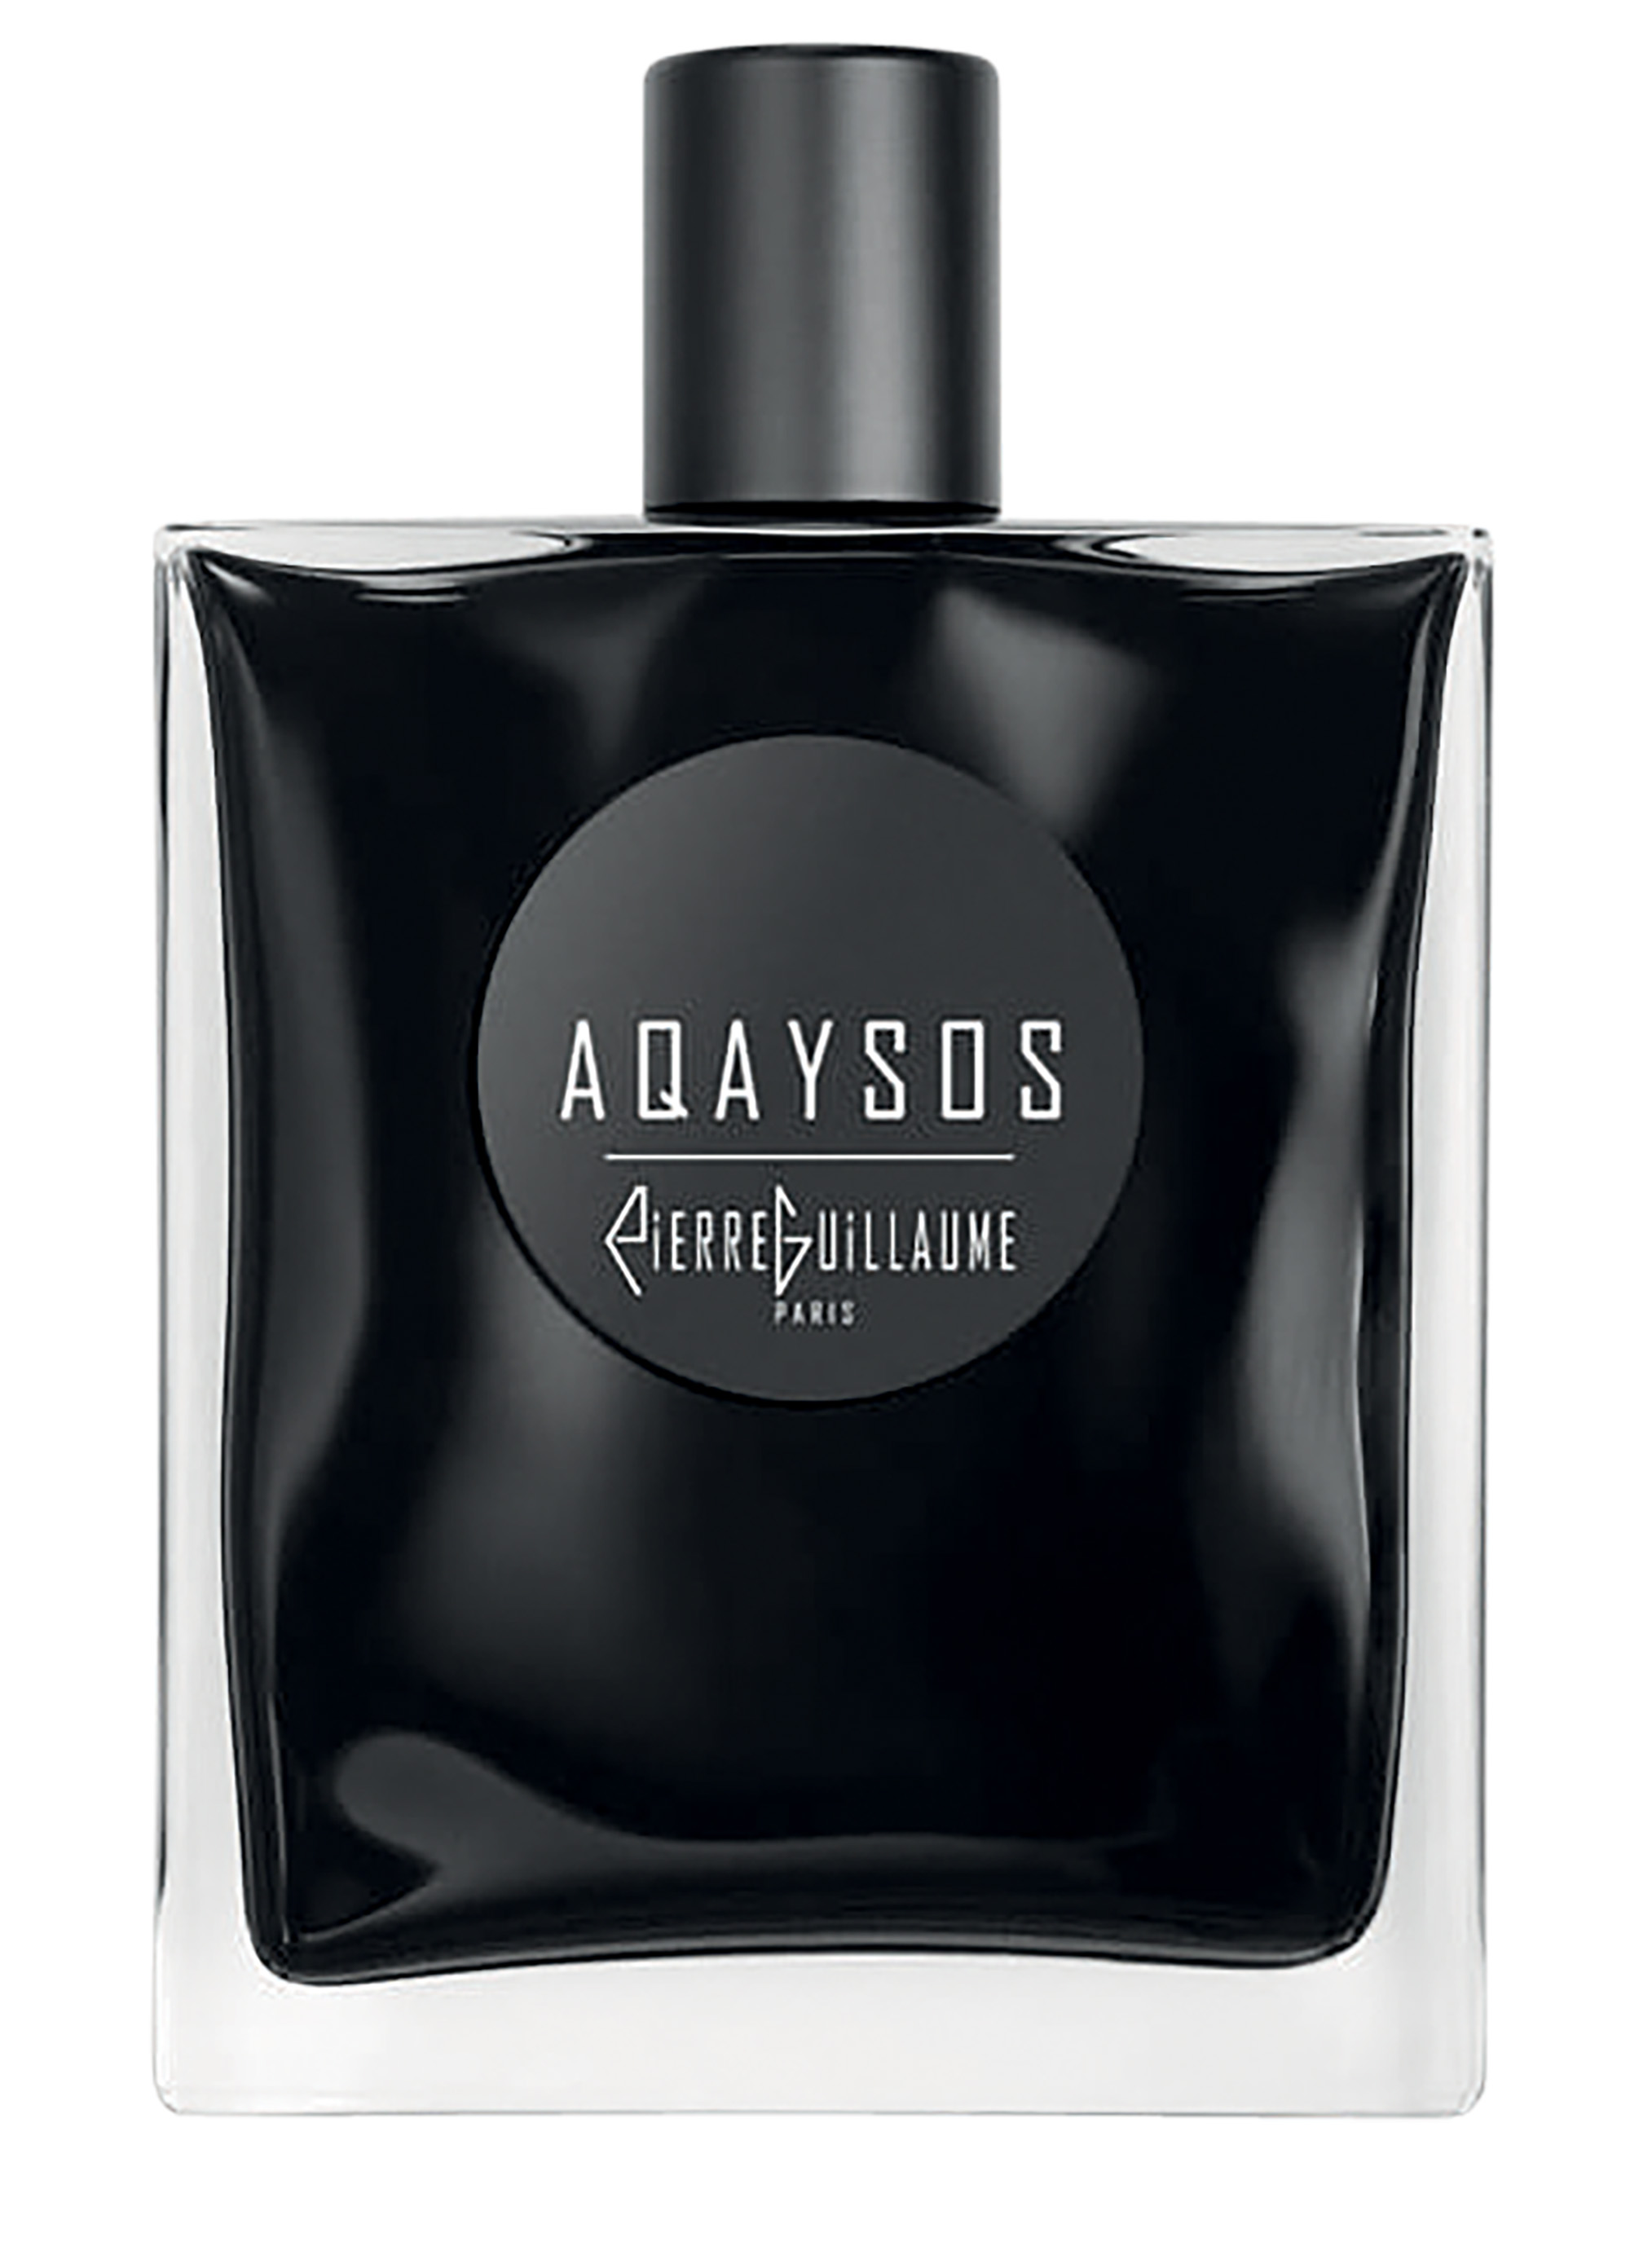 mùi hương Aqaysos Pierre Guillaume Paris